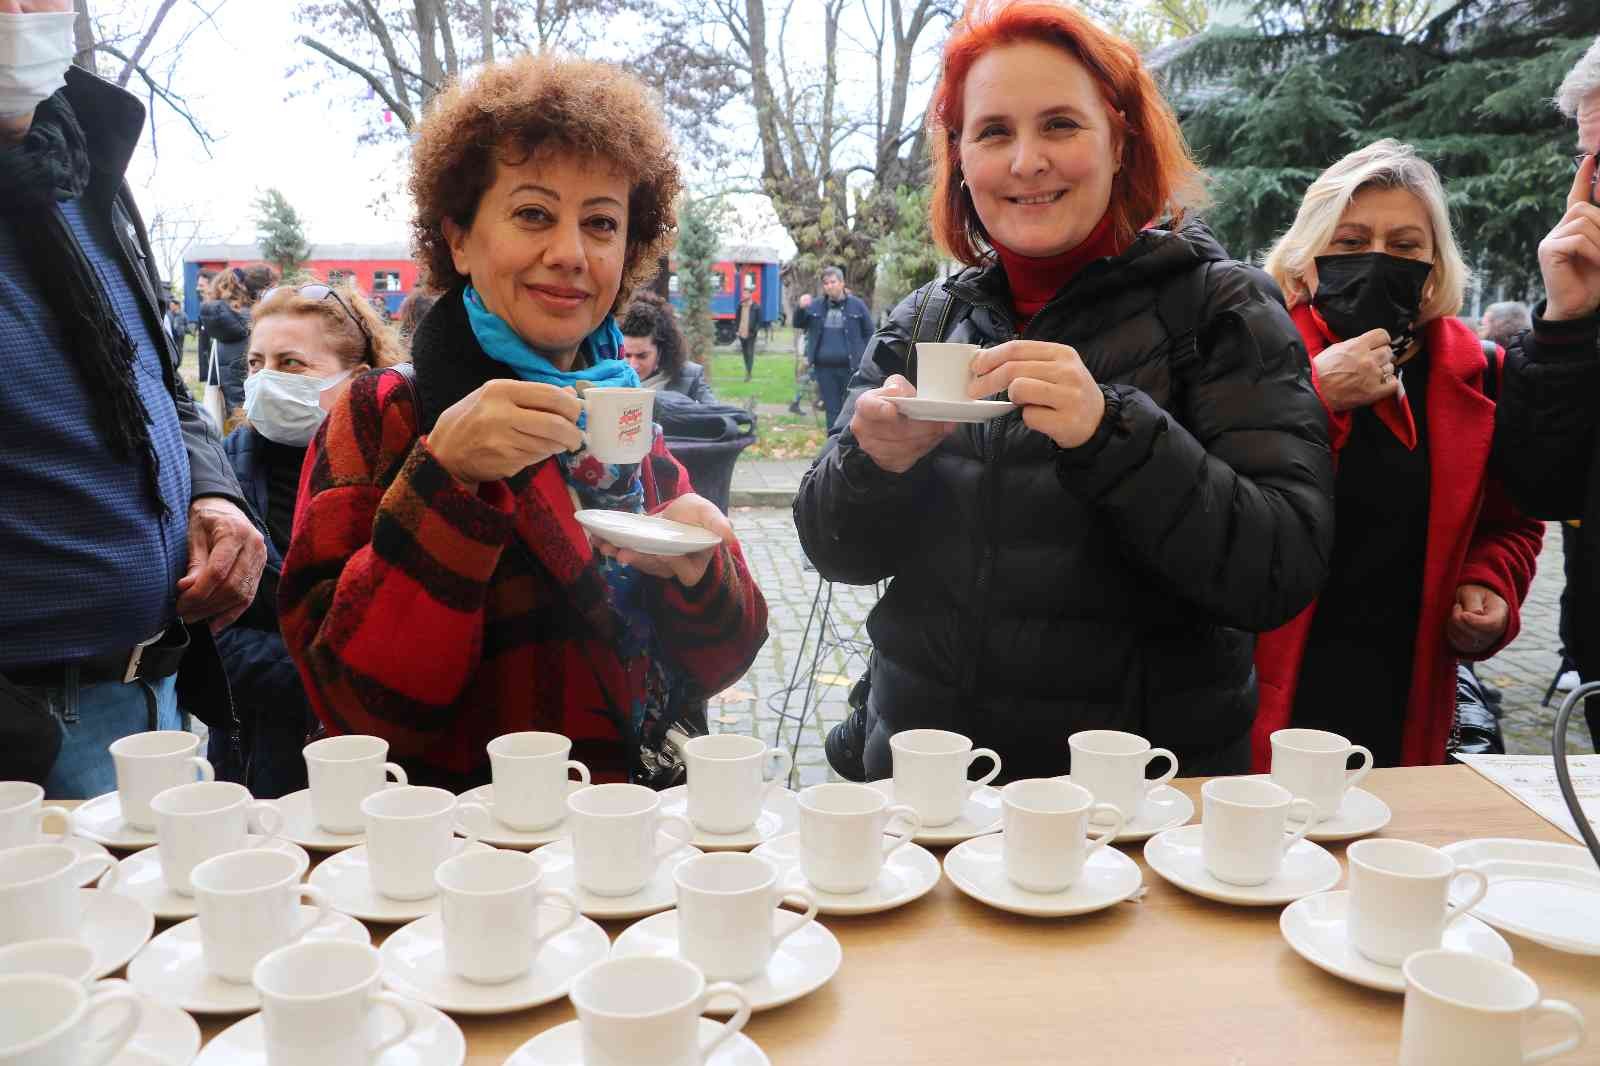 Edirne’de Kahve ve Çikolata Festivali yoğun ilgi gördü #edirne